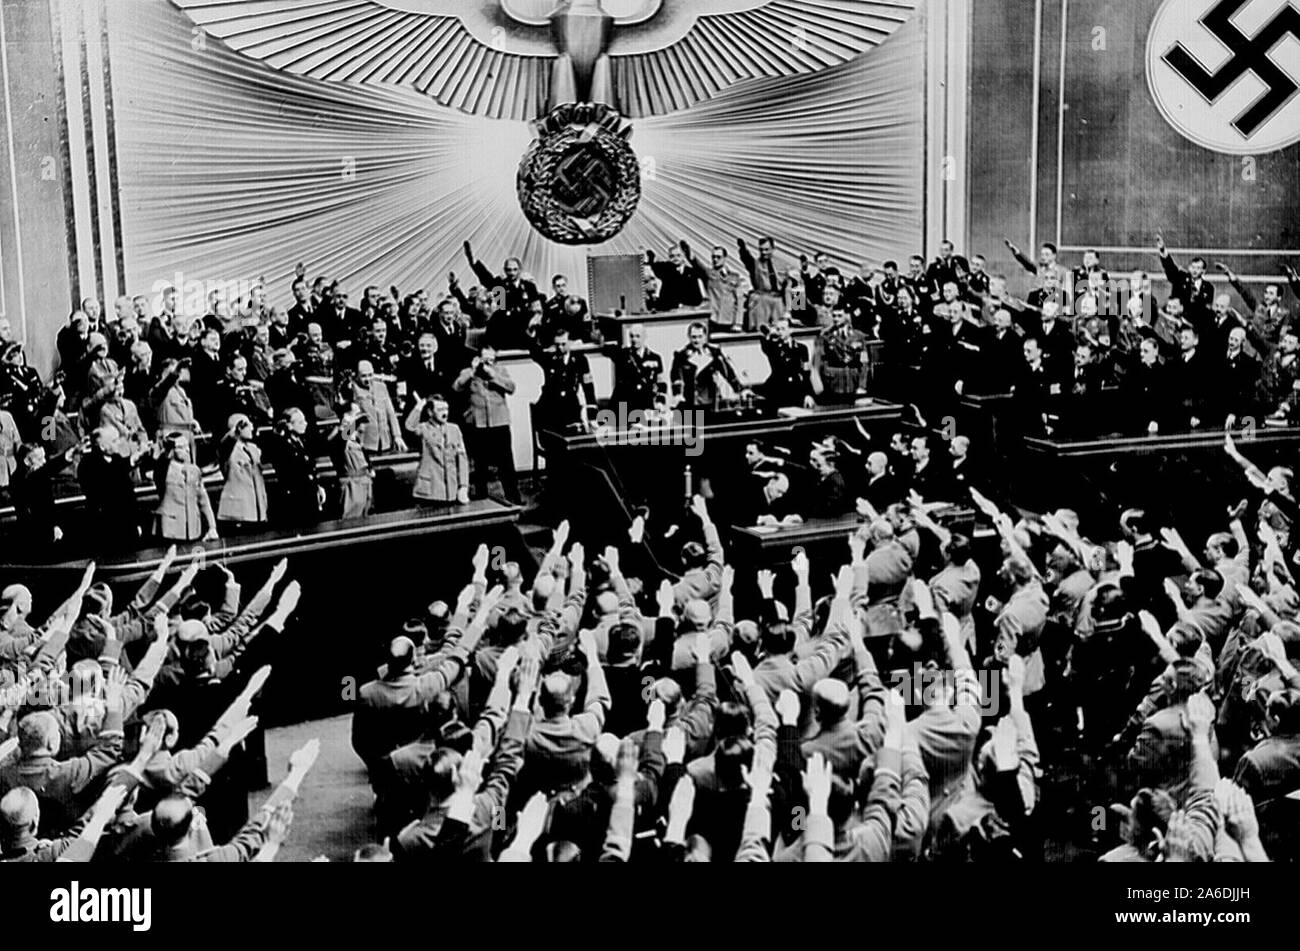 Hitler accepte l'ovation du Reichstag après l'annonce de l'acquisition de "rétablissement de la paix" de l'Autriche. Elle a ouvert la voie à l'annexe la région des Sudètes en Tchécoslovaquie, en grande partie habitée par une population germanophone. Berlin, mars 1938 Banque D'Images